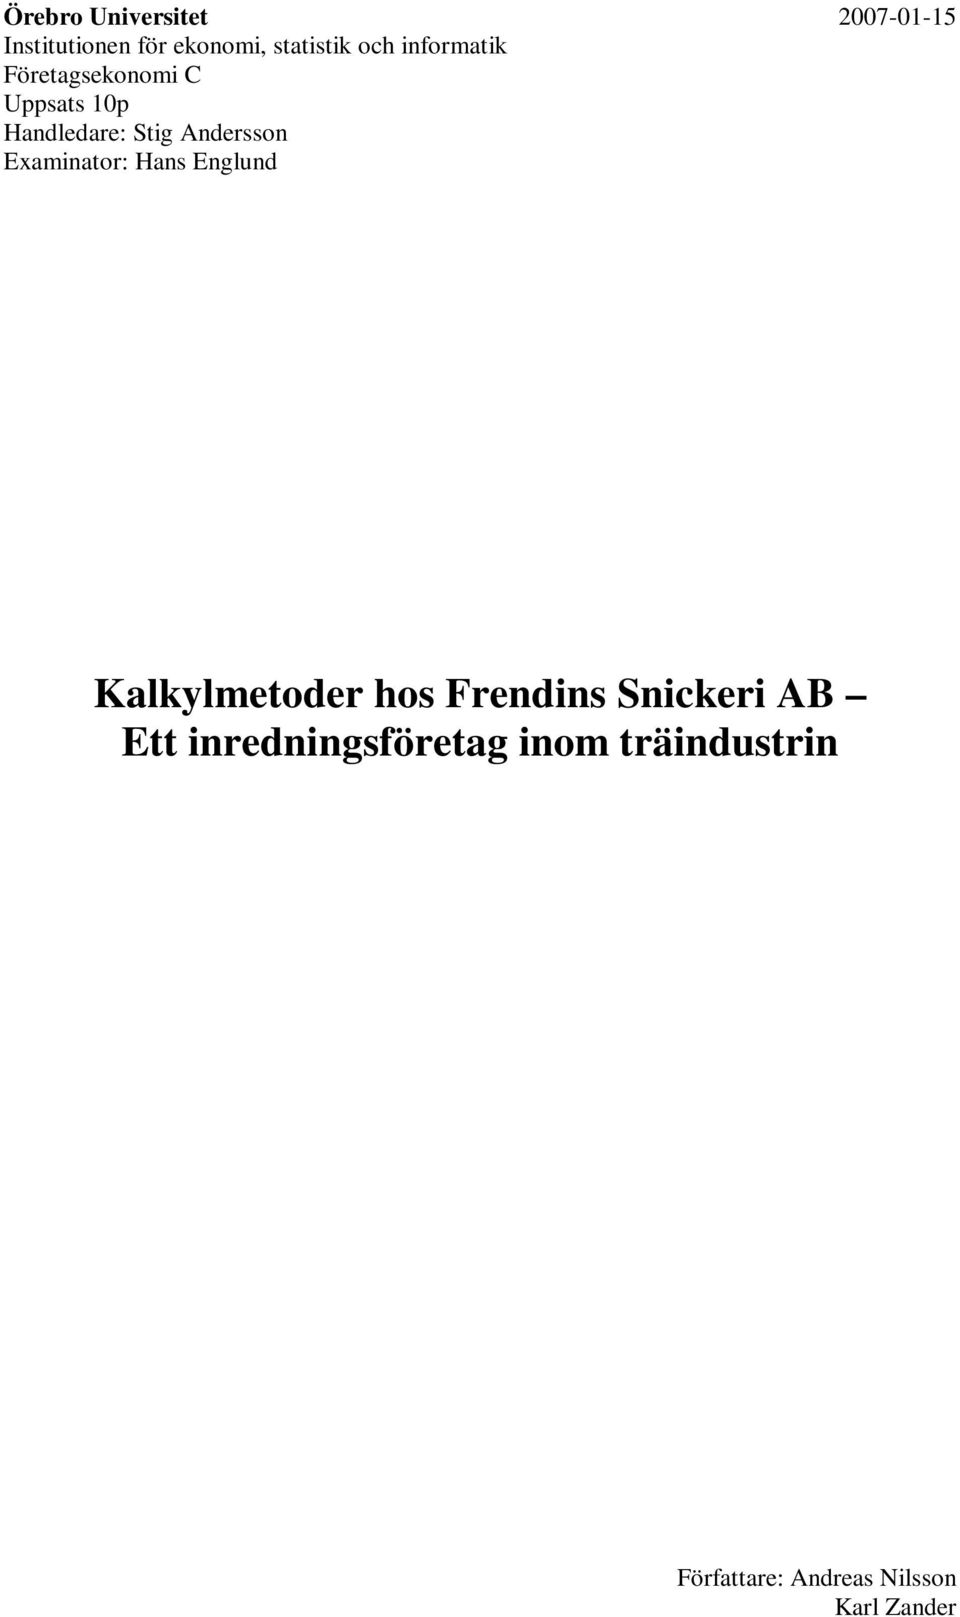 Examinator: Hans Englund Kalkylmetoder hos Frendins Snickeri AB Ett